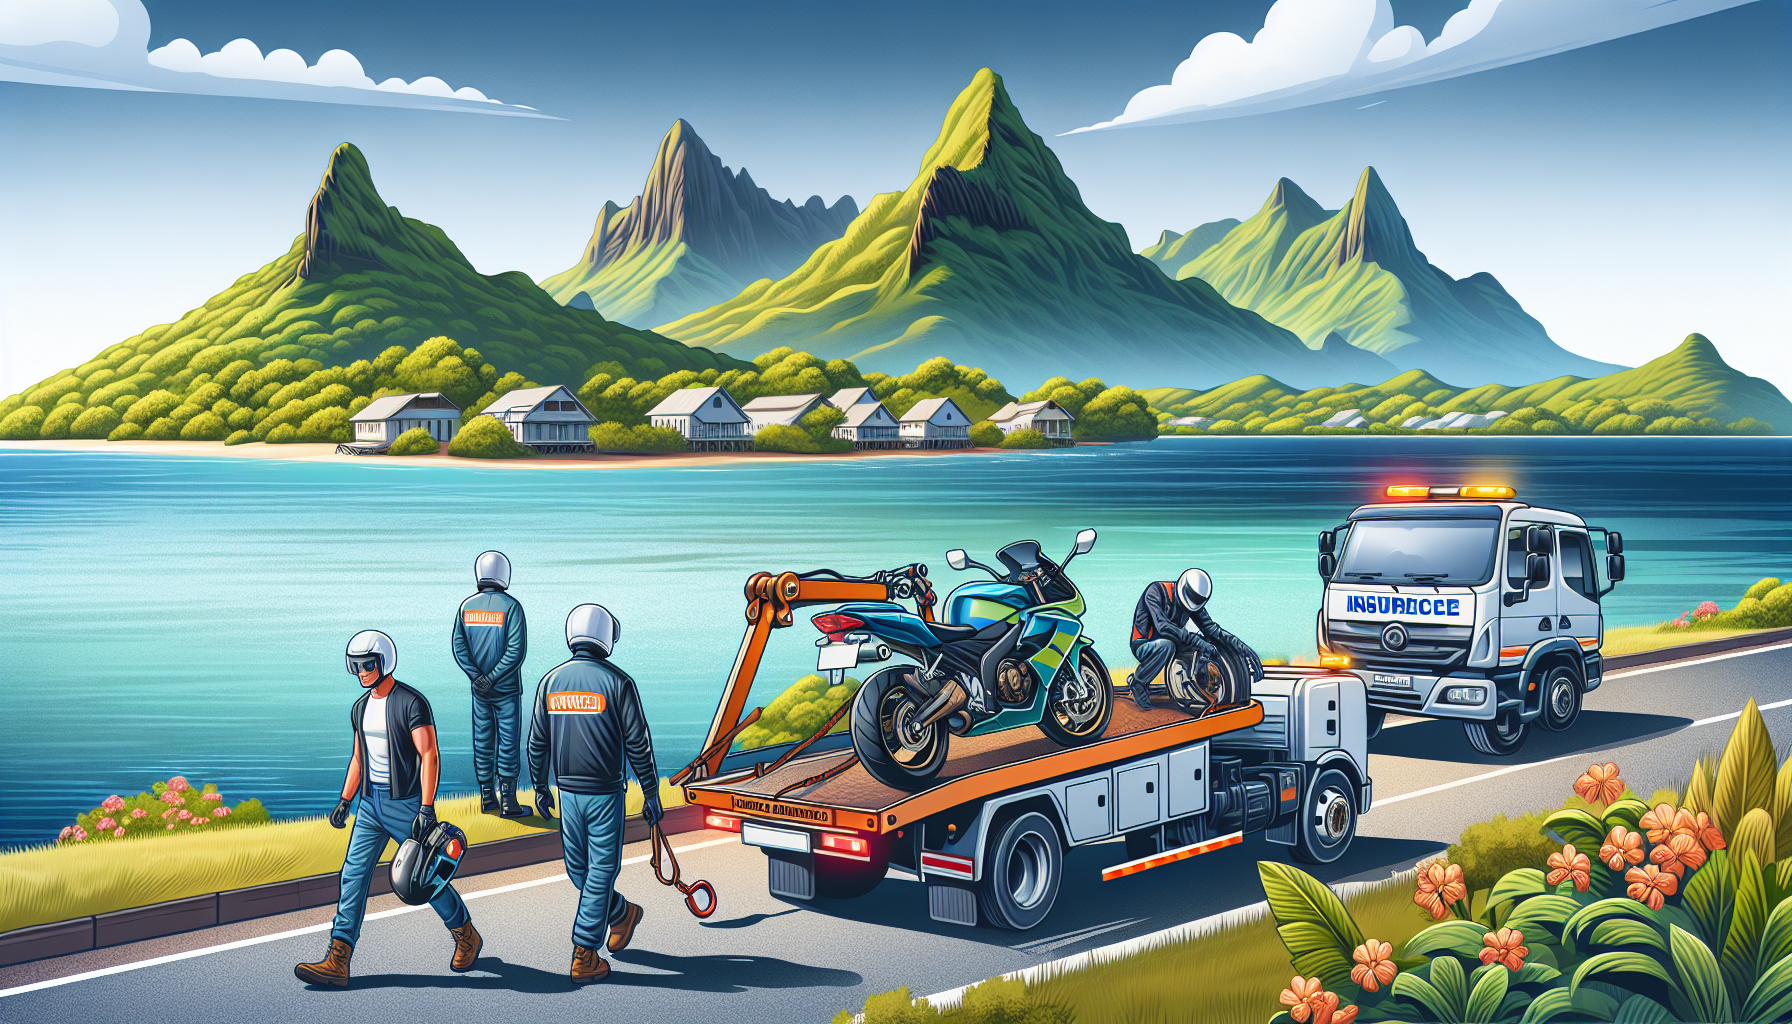 découvrez comment fonctionne le dépannage pour les motos assurées à la réunion avec notre assurance moto adaptée à votre île.